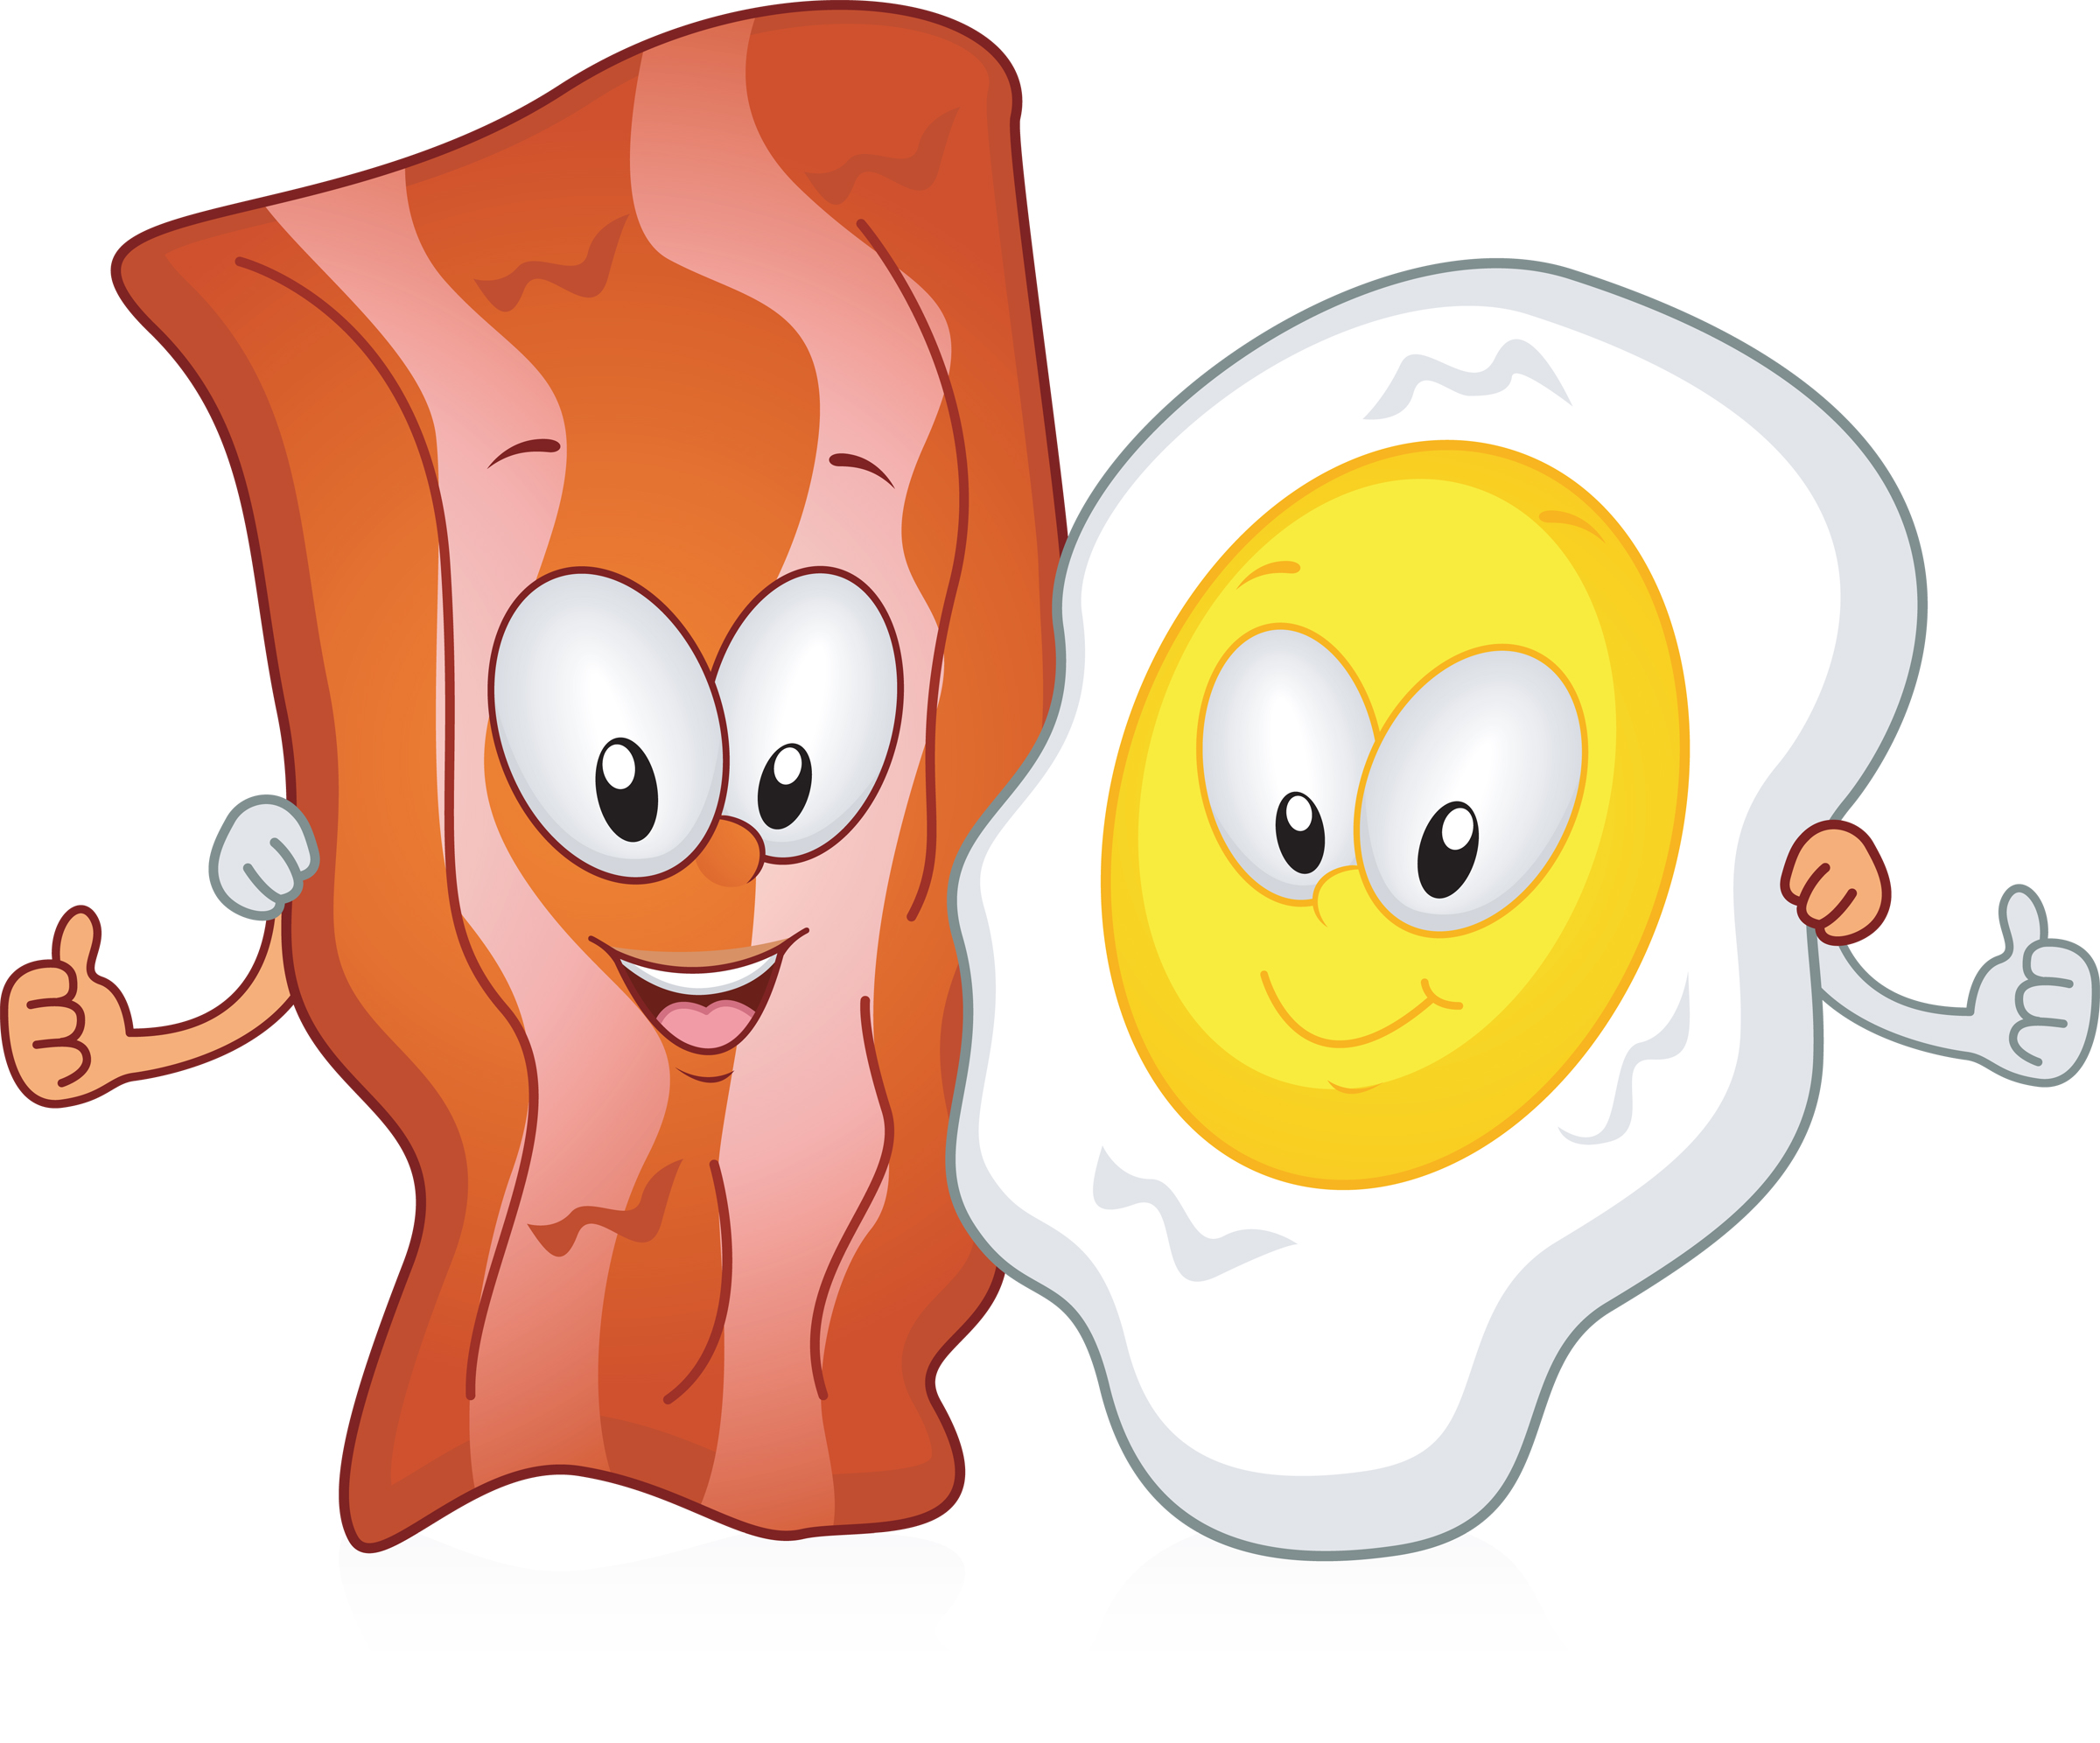 bacon and egg clip art